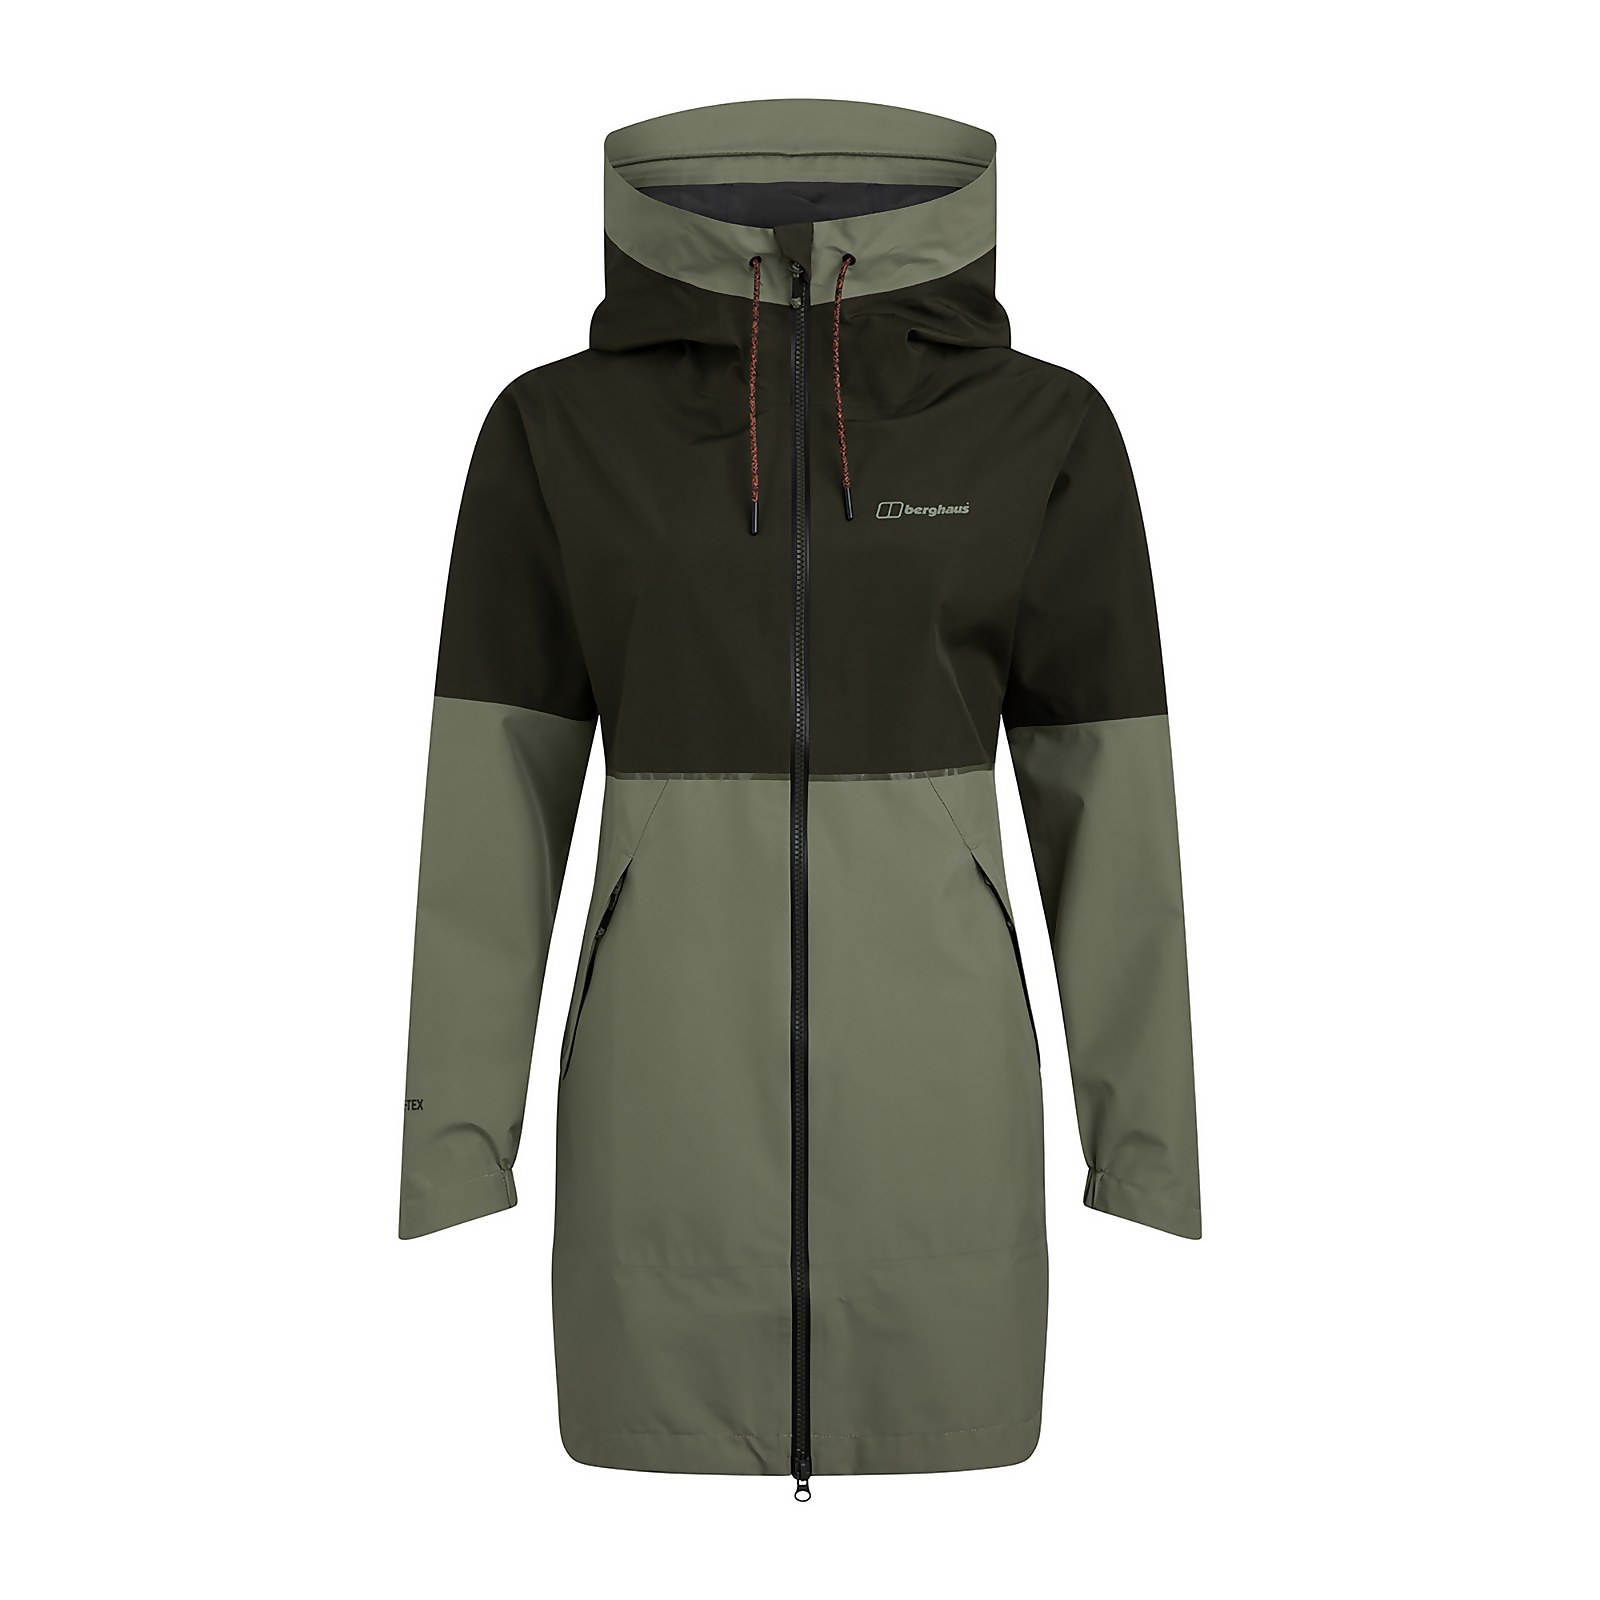 Berghaus Womens Rothley Waterproof Jacket - Green - 10